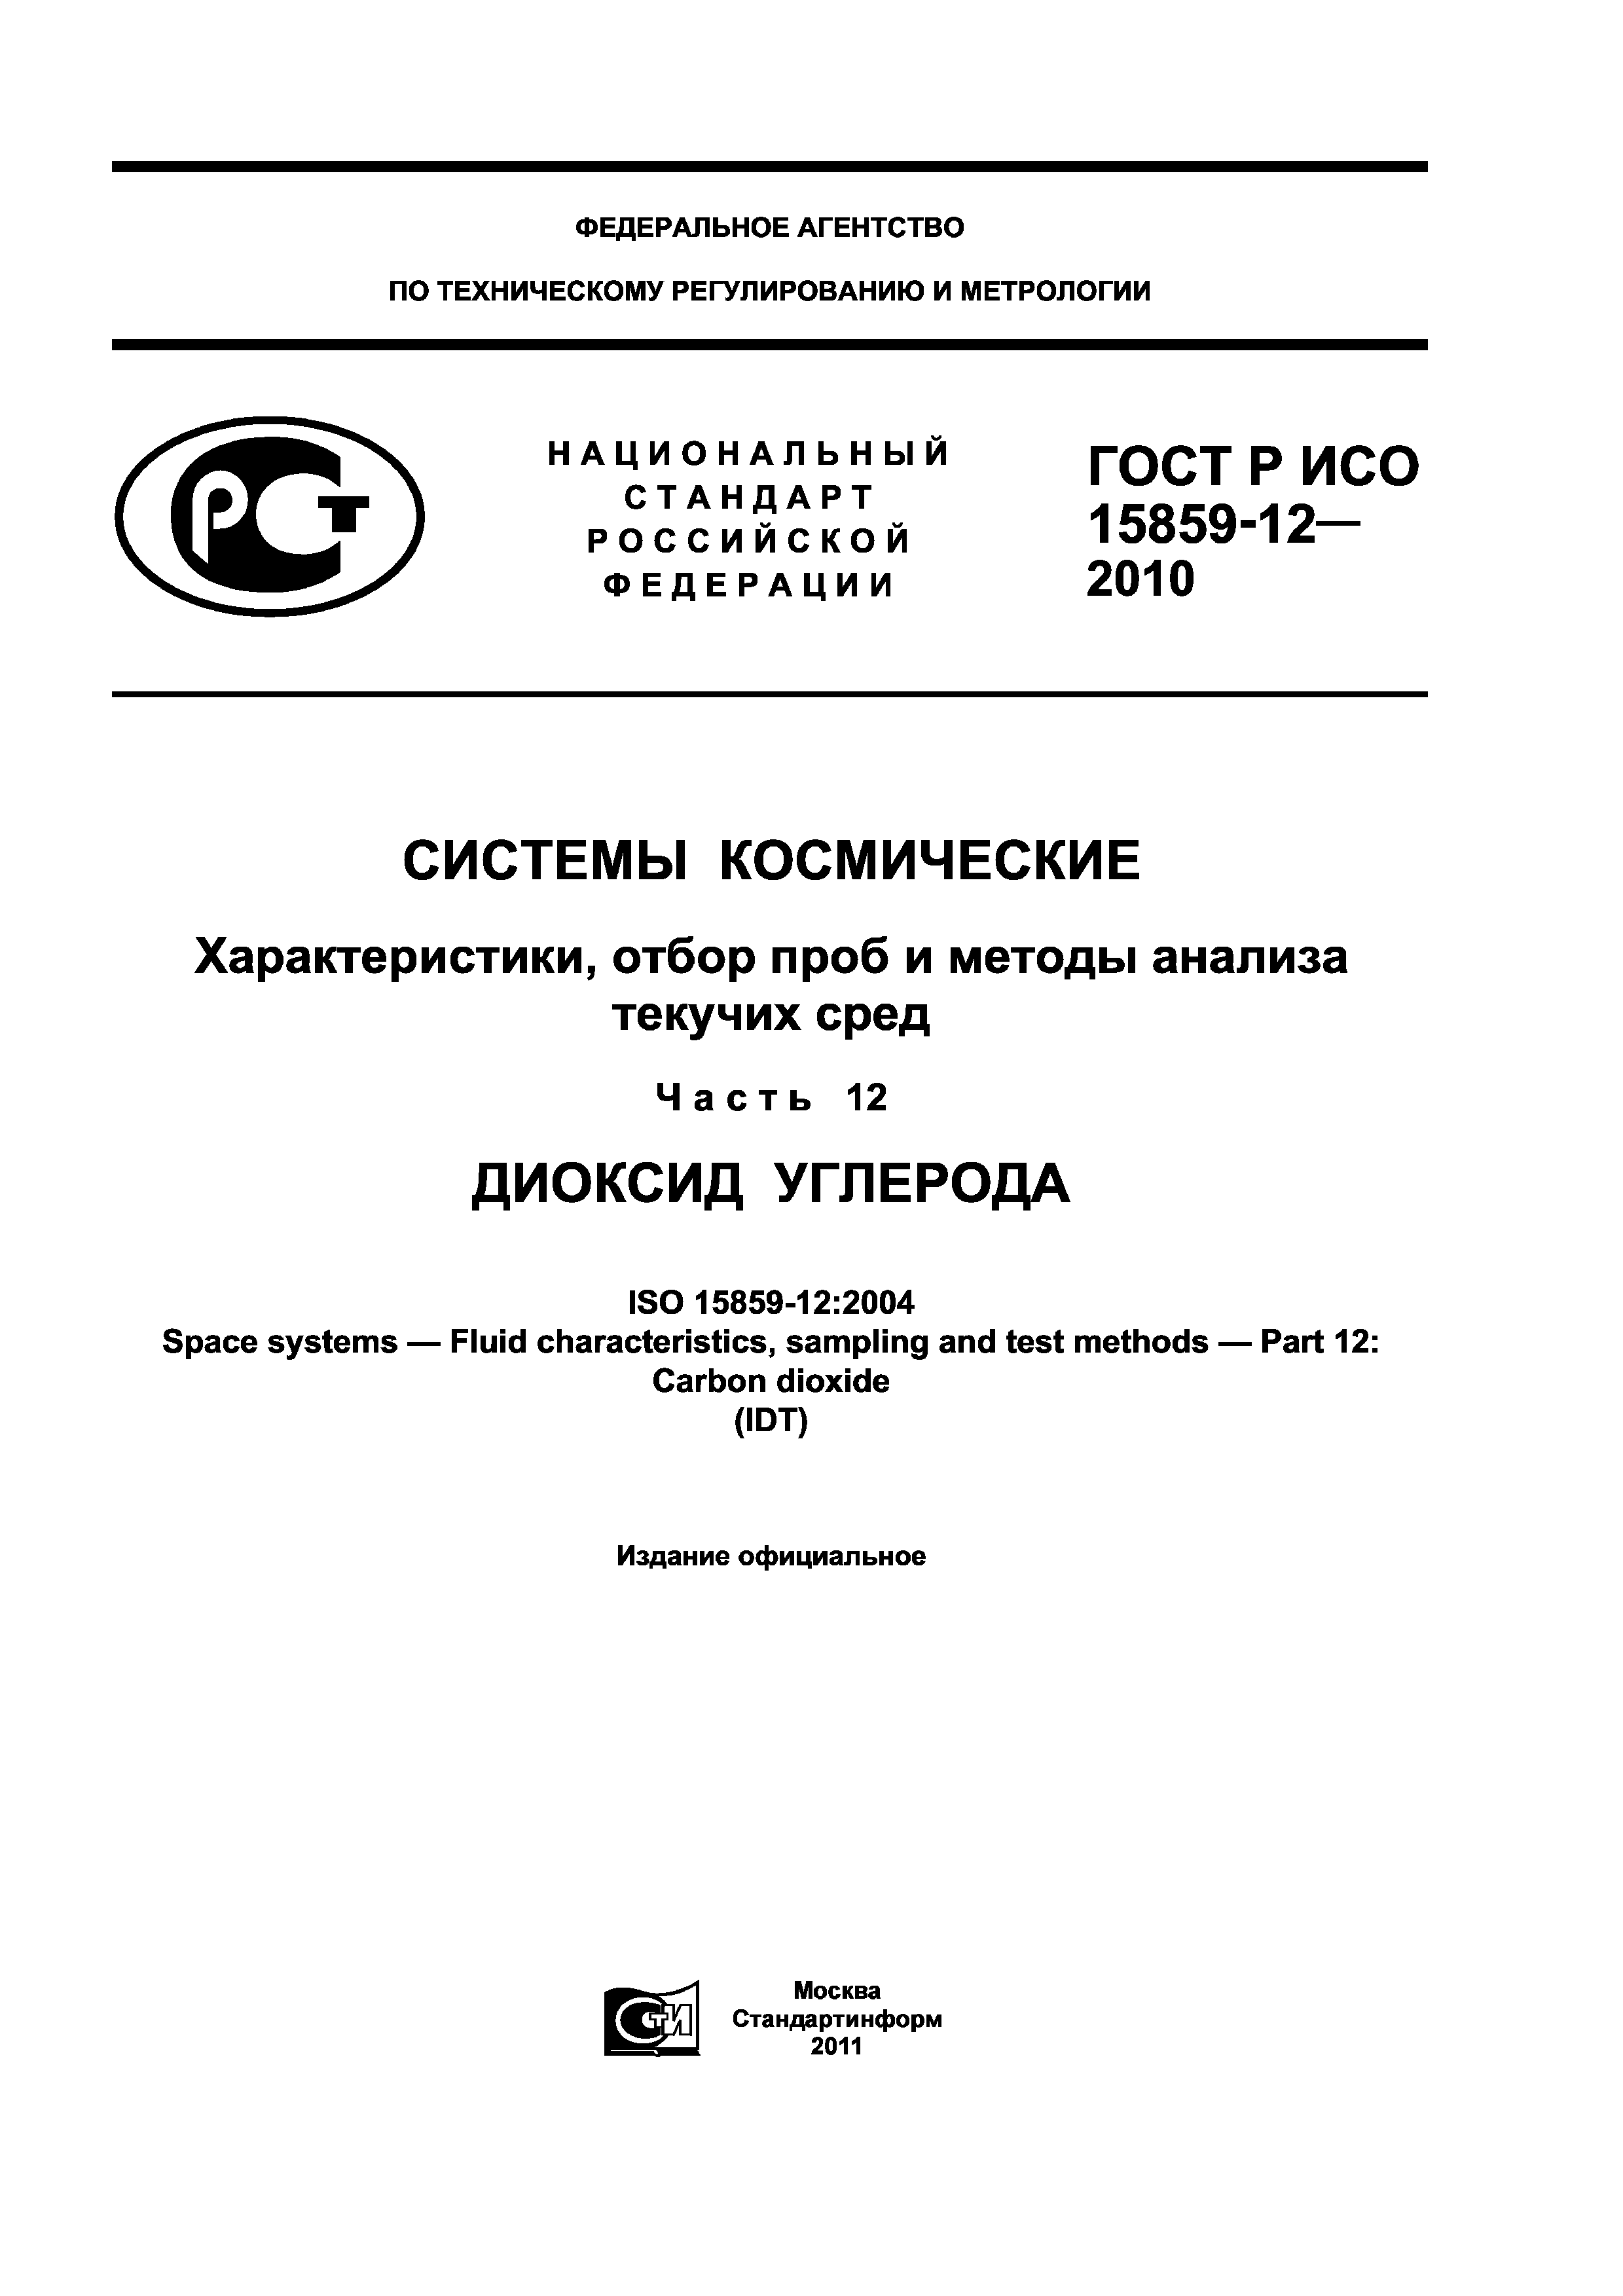 ГОСТ Р ИСО 15859-12-2010